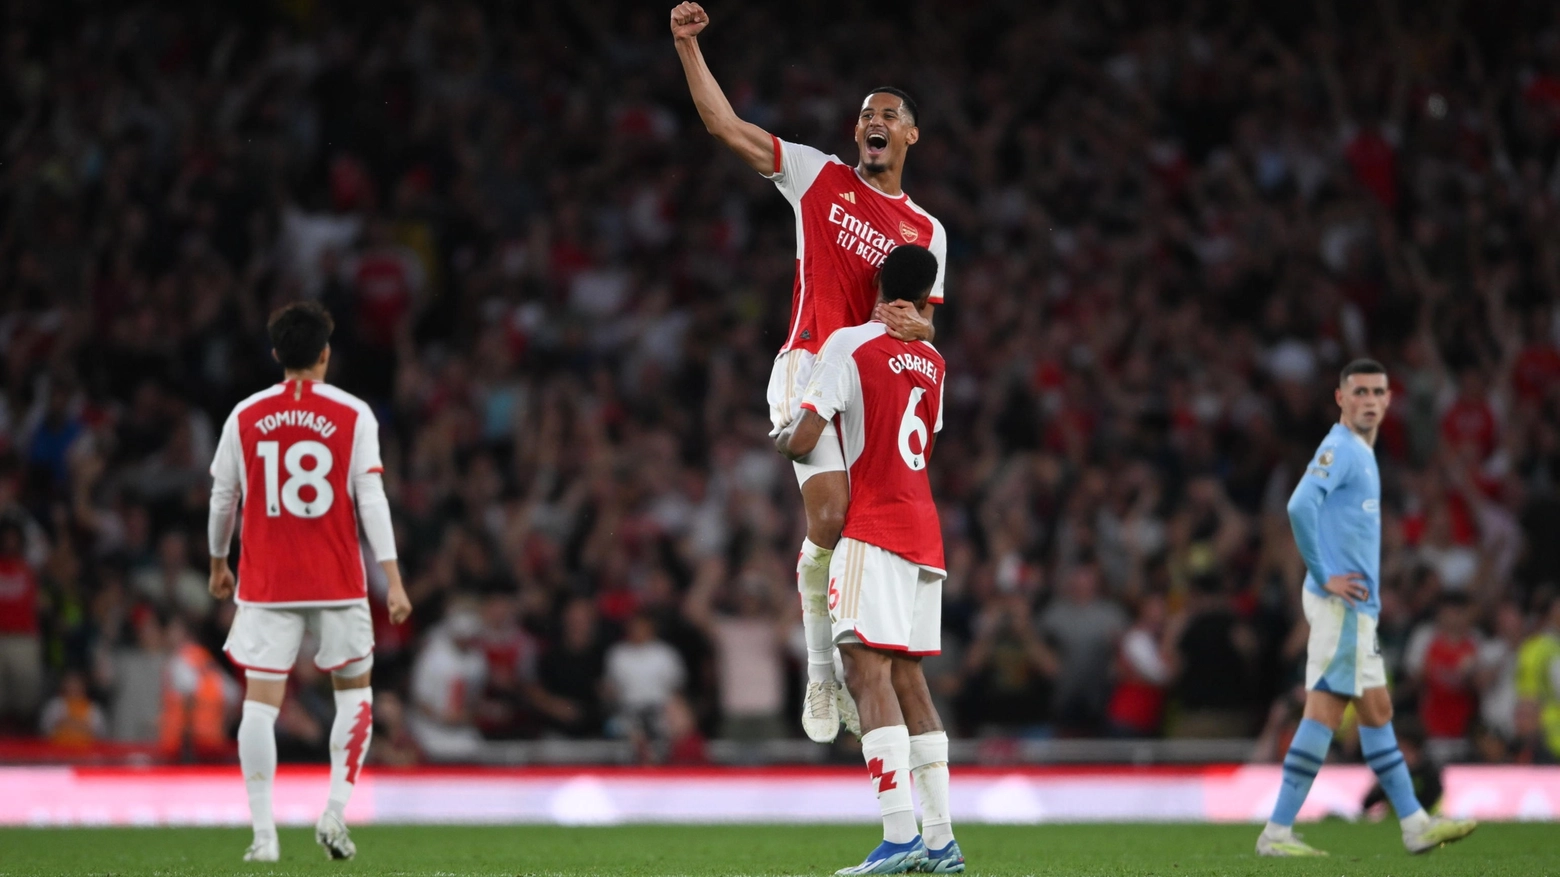 La gioia dei giocatori dell'Arsenal dopo il gol al Manchester City (Ansa)